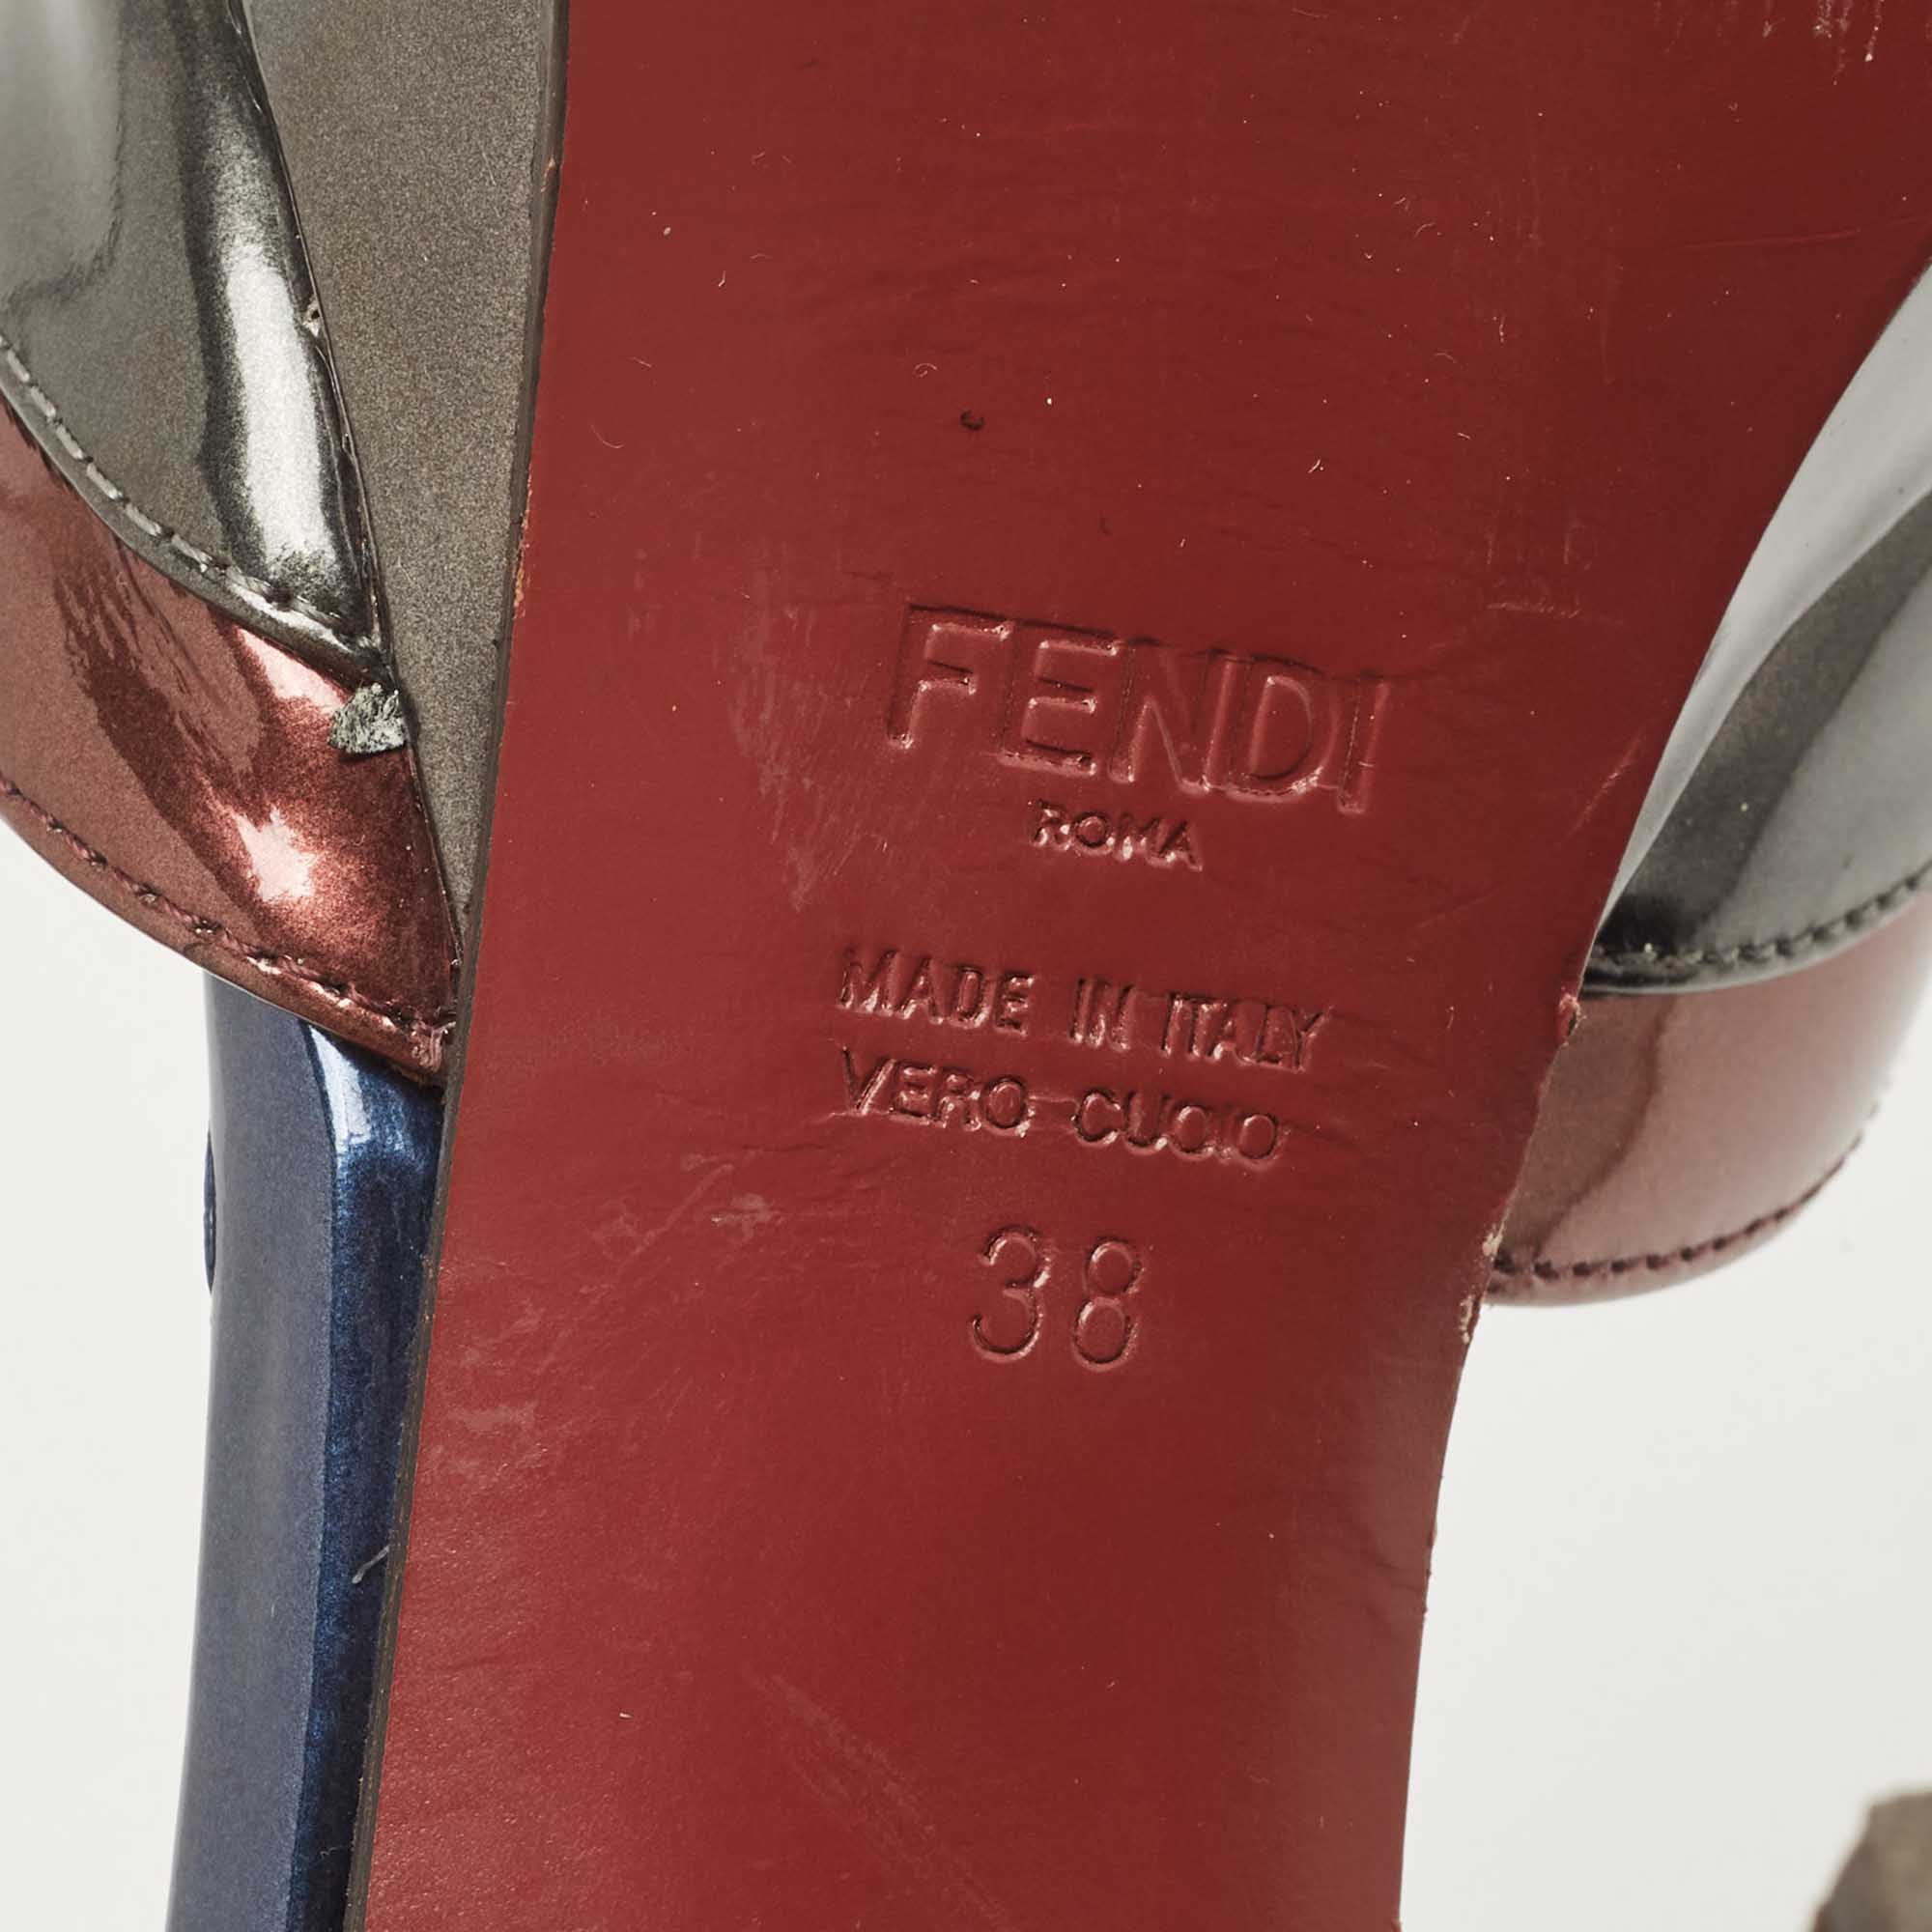 Fendi Multicolor Patent Leather Platform Ankle Strap Sandals Size 38